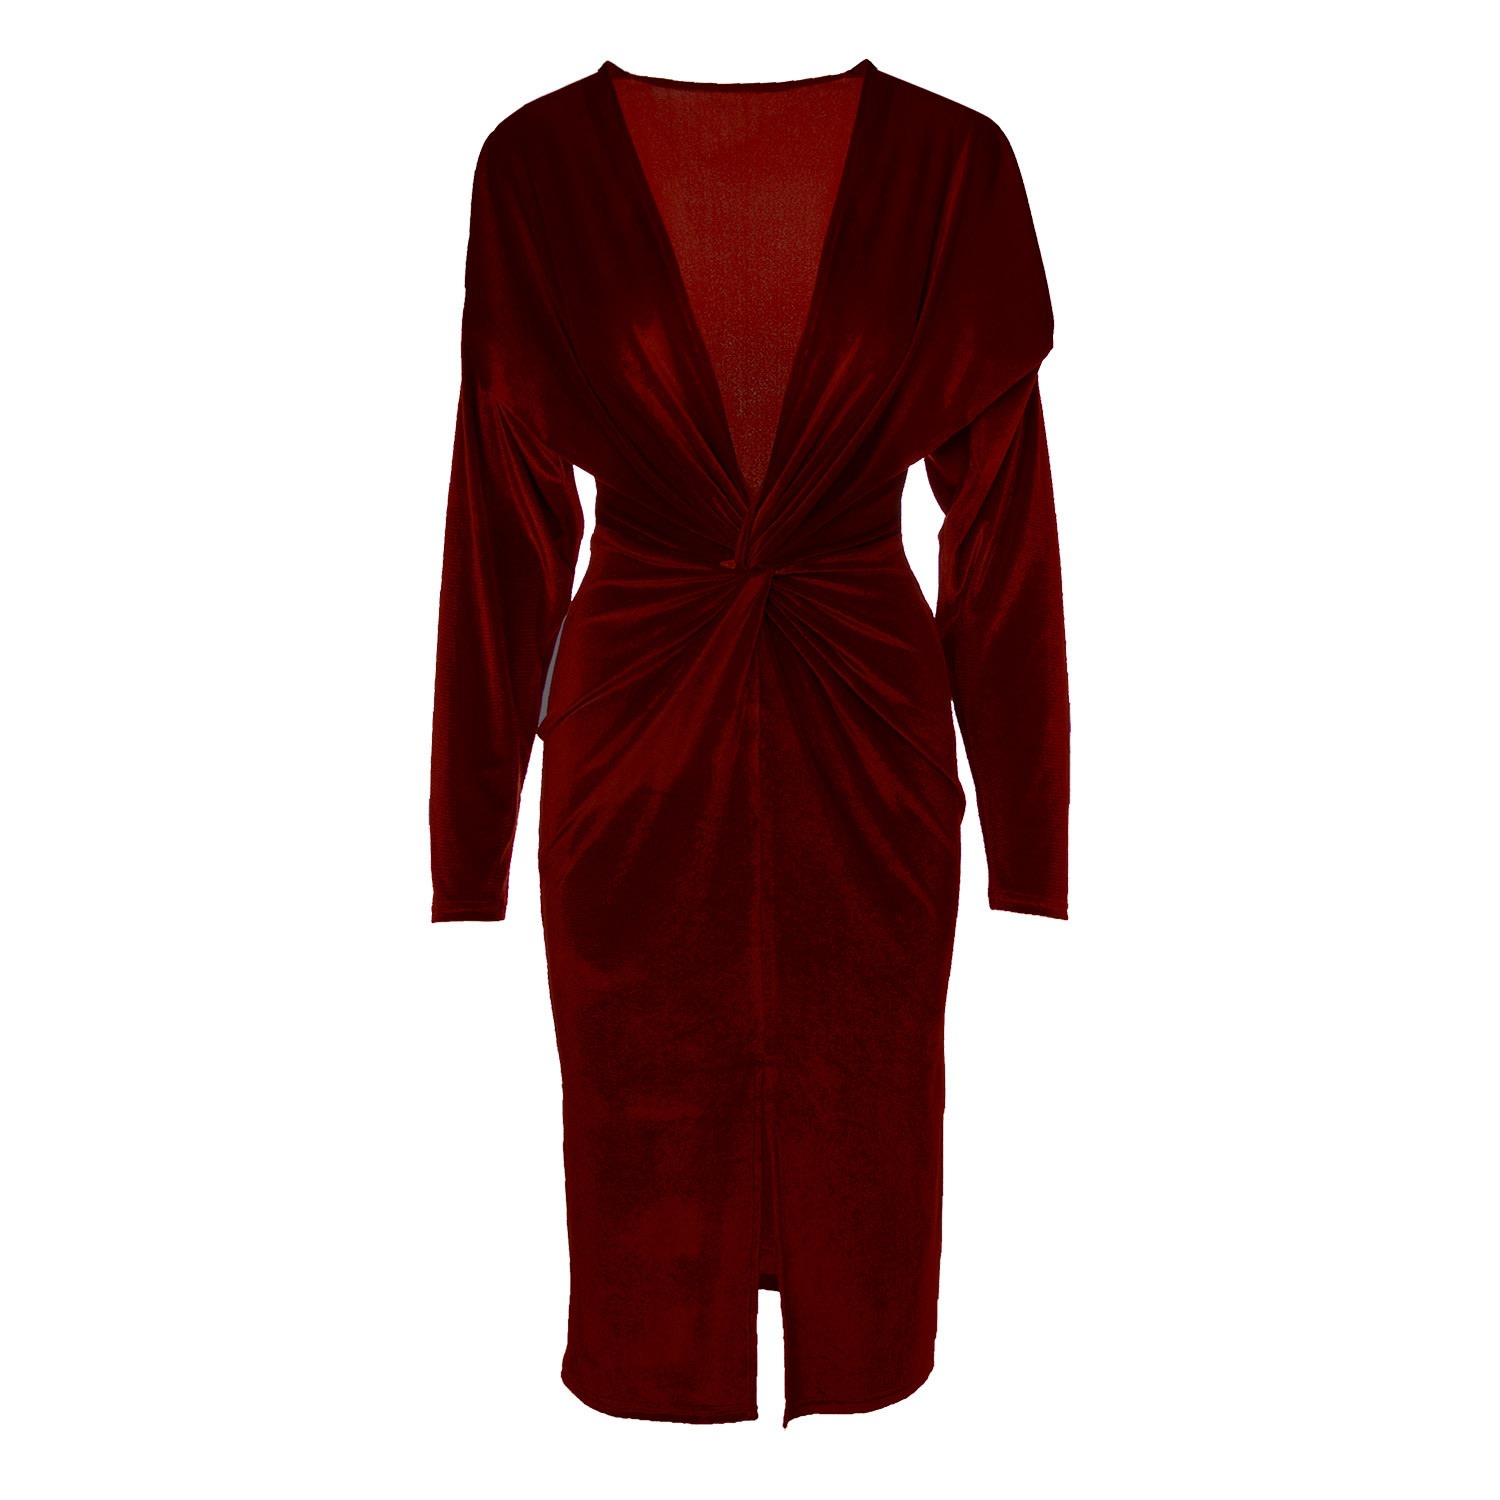 Women’s Red Burgundy Velvet Dress With Knot Large Bluzat